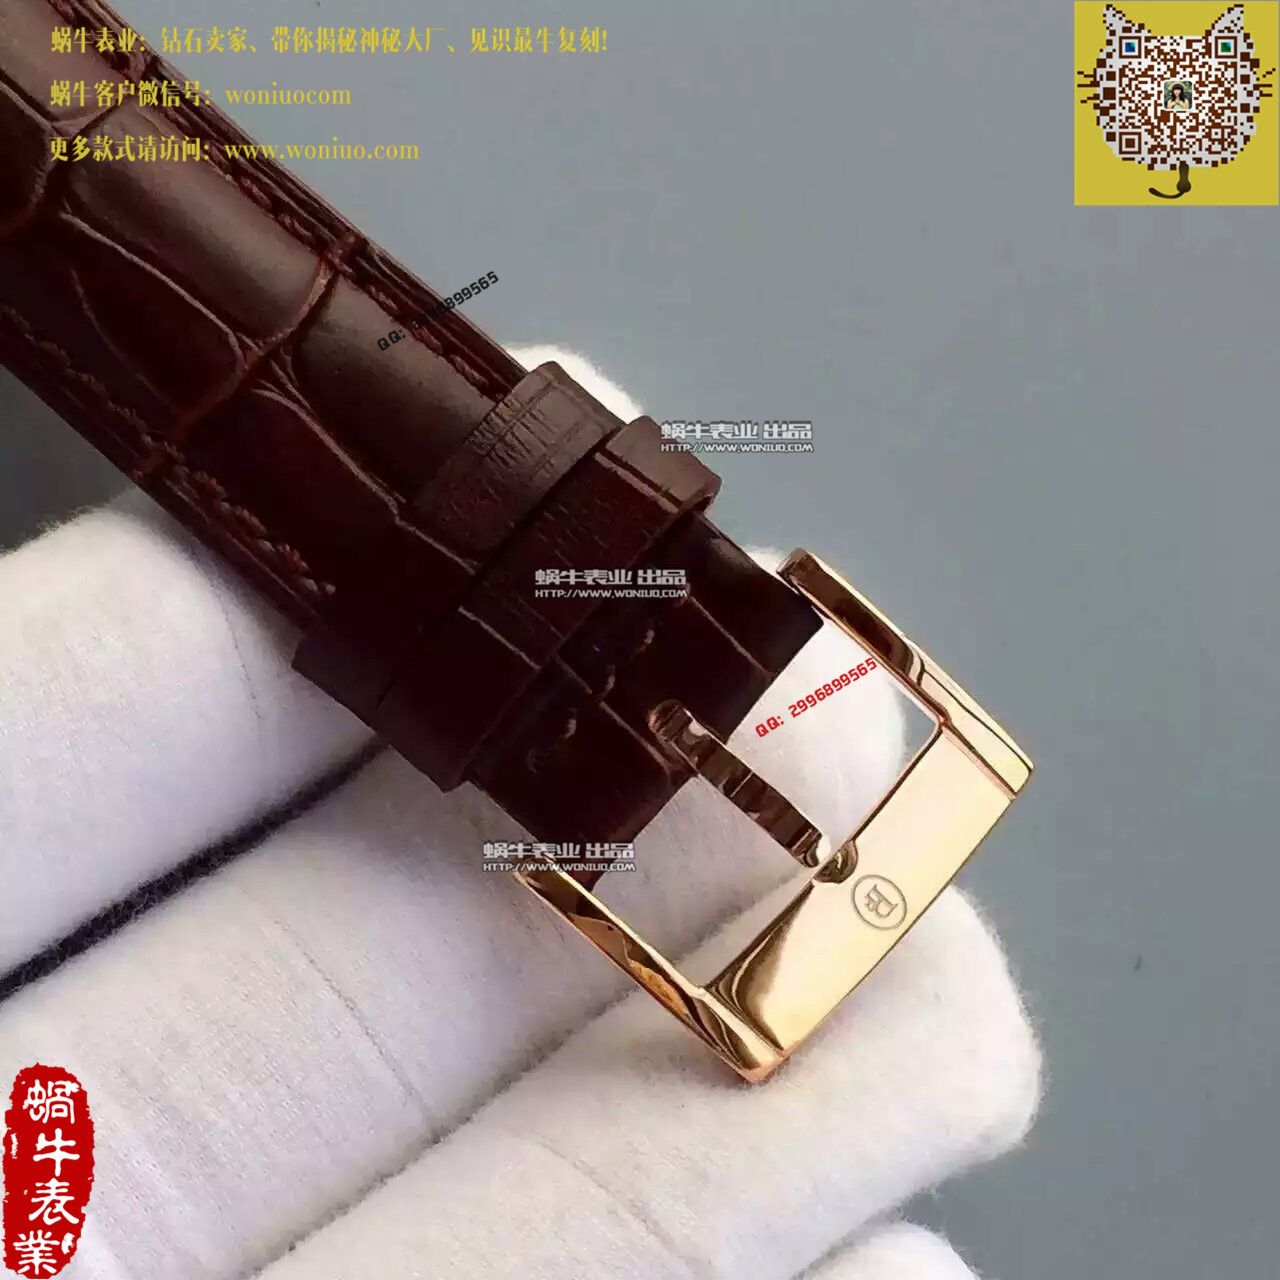 【TF厂一比一高仿手表】帕玛强尼Tonda系列PF012508.01腕表 